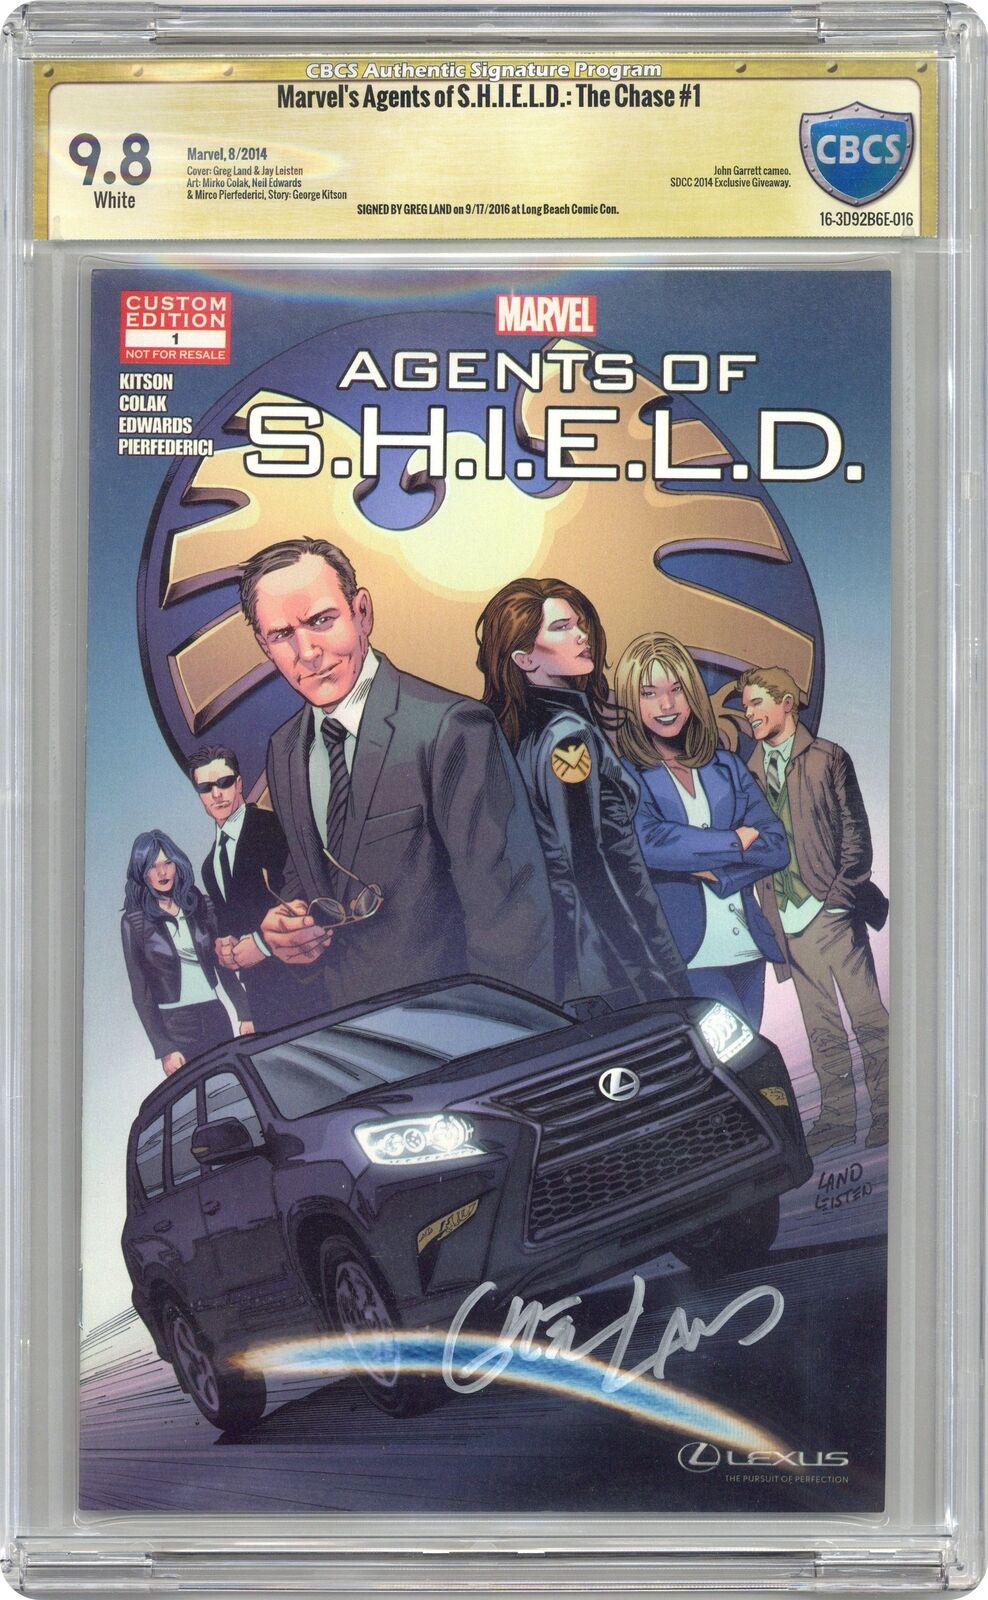 Marvel's Agents of S.H.I.E.L.D The Chase #1 CBCS 9.8 SS Greg Land 2014